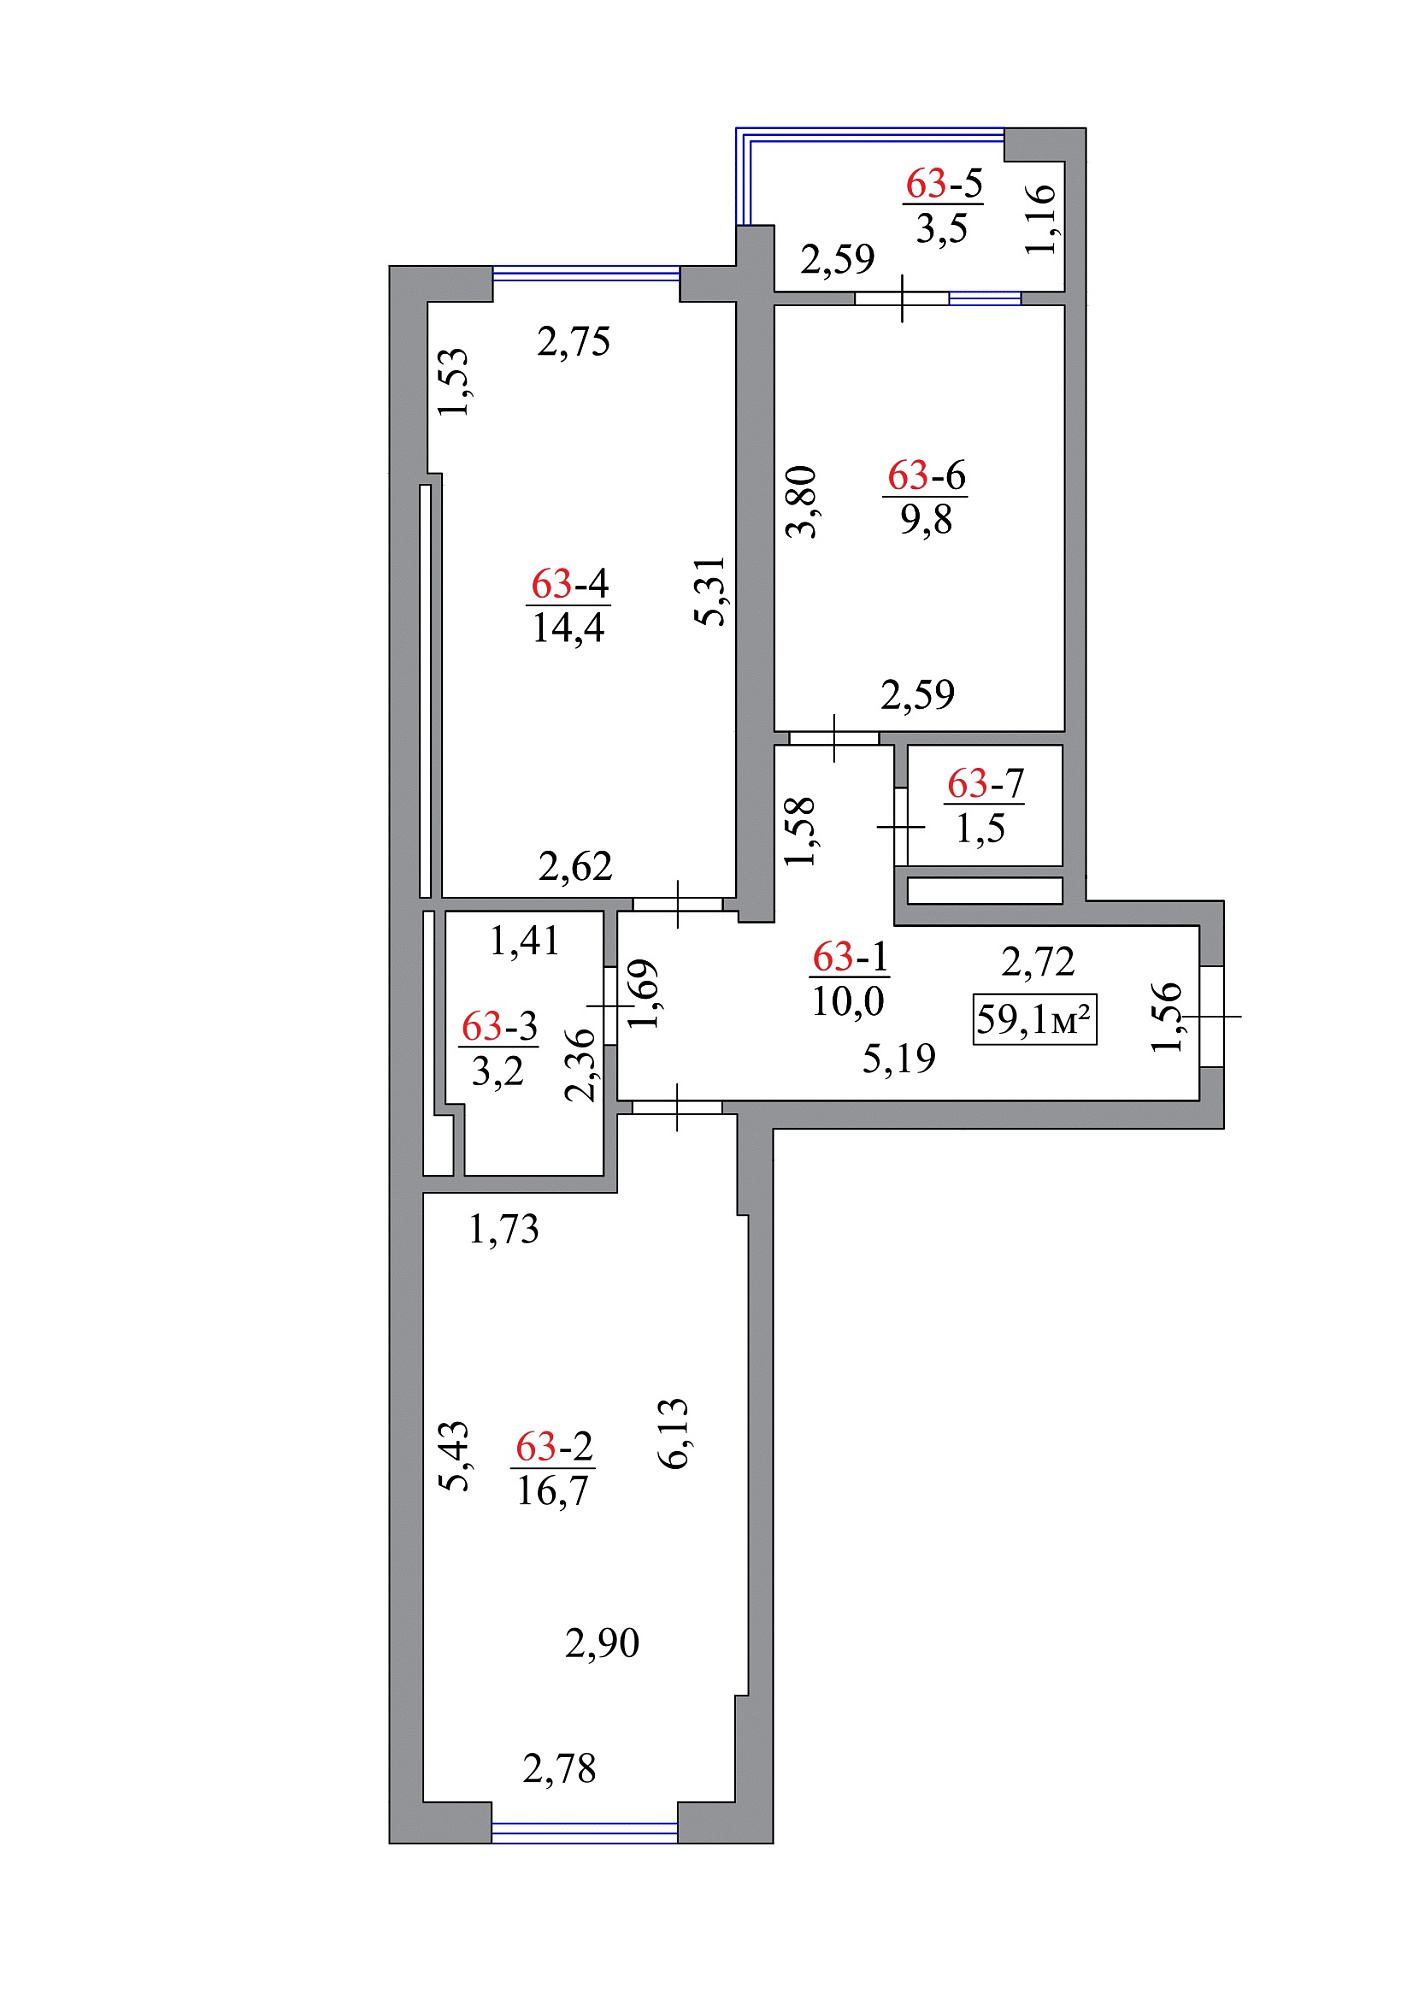 Планировка 2-к квартира площей 59.1м2, AB-07-07/00057.